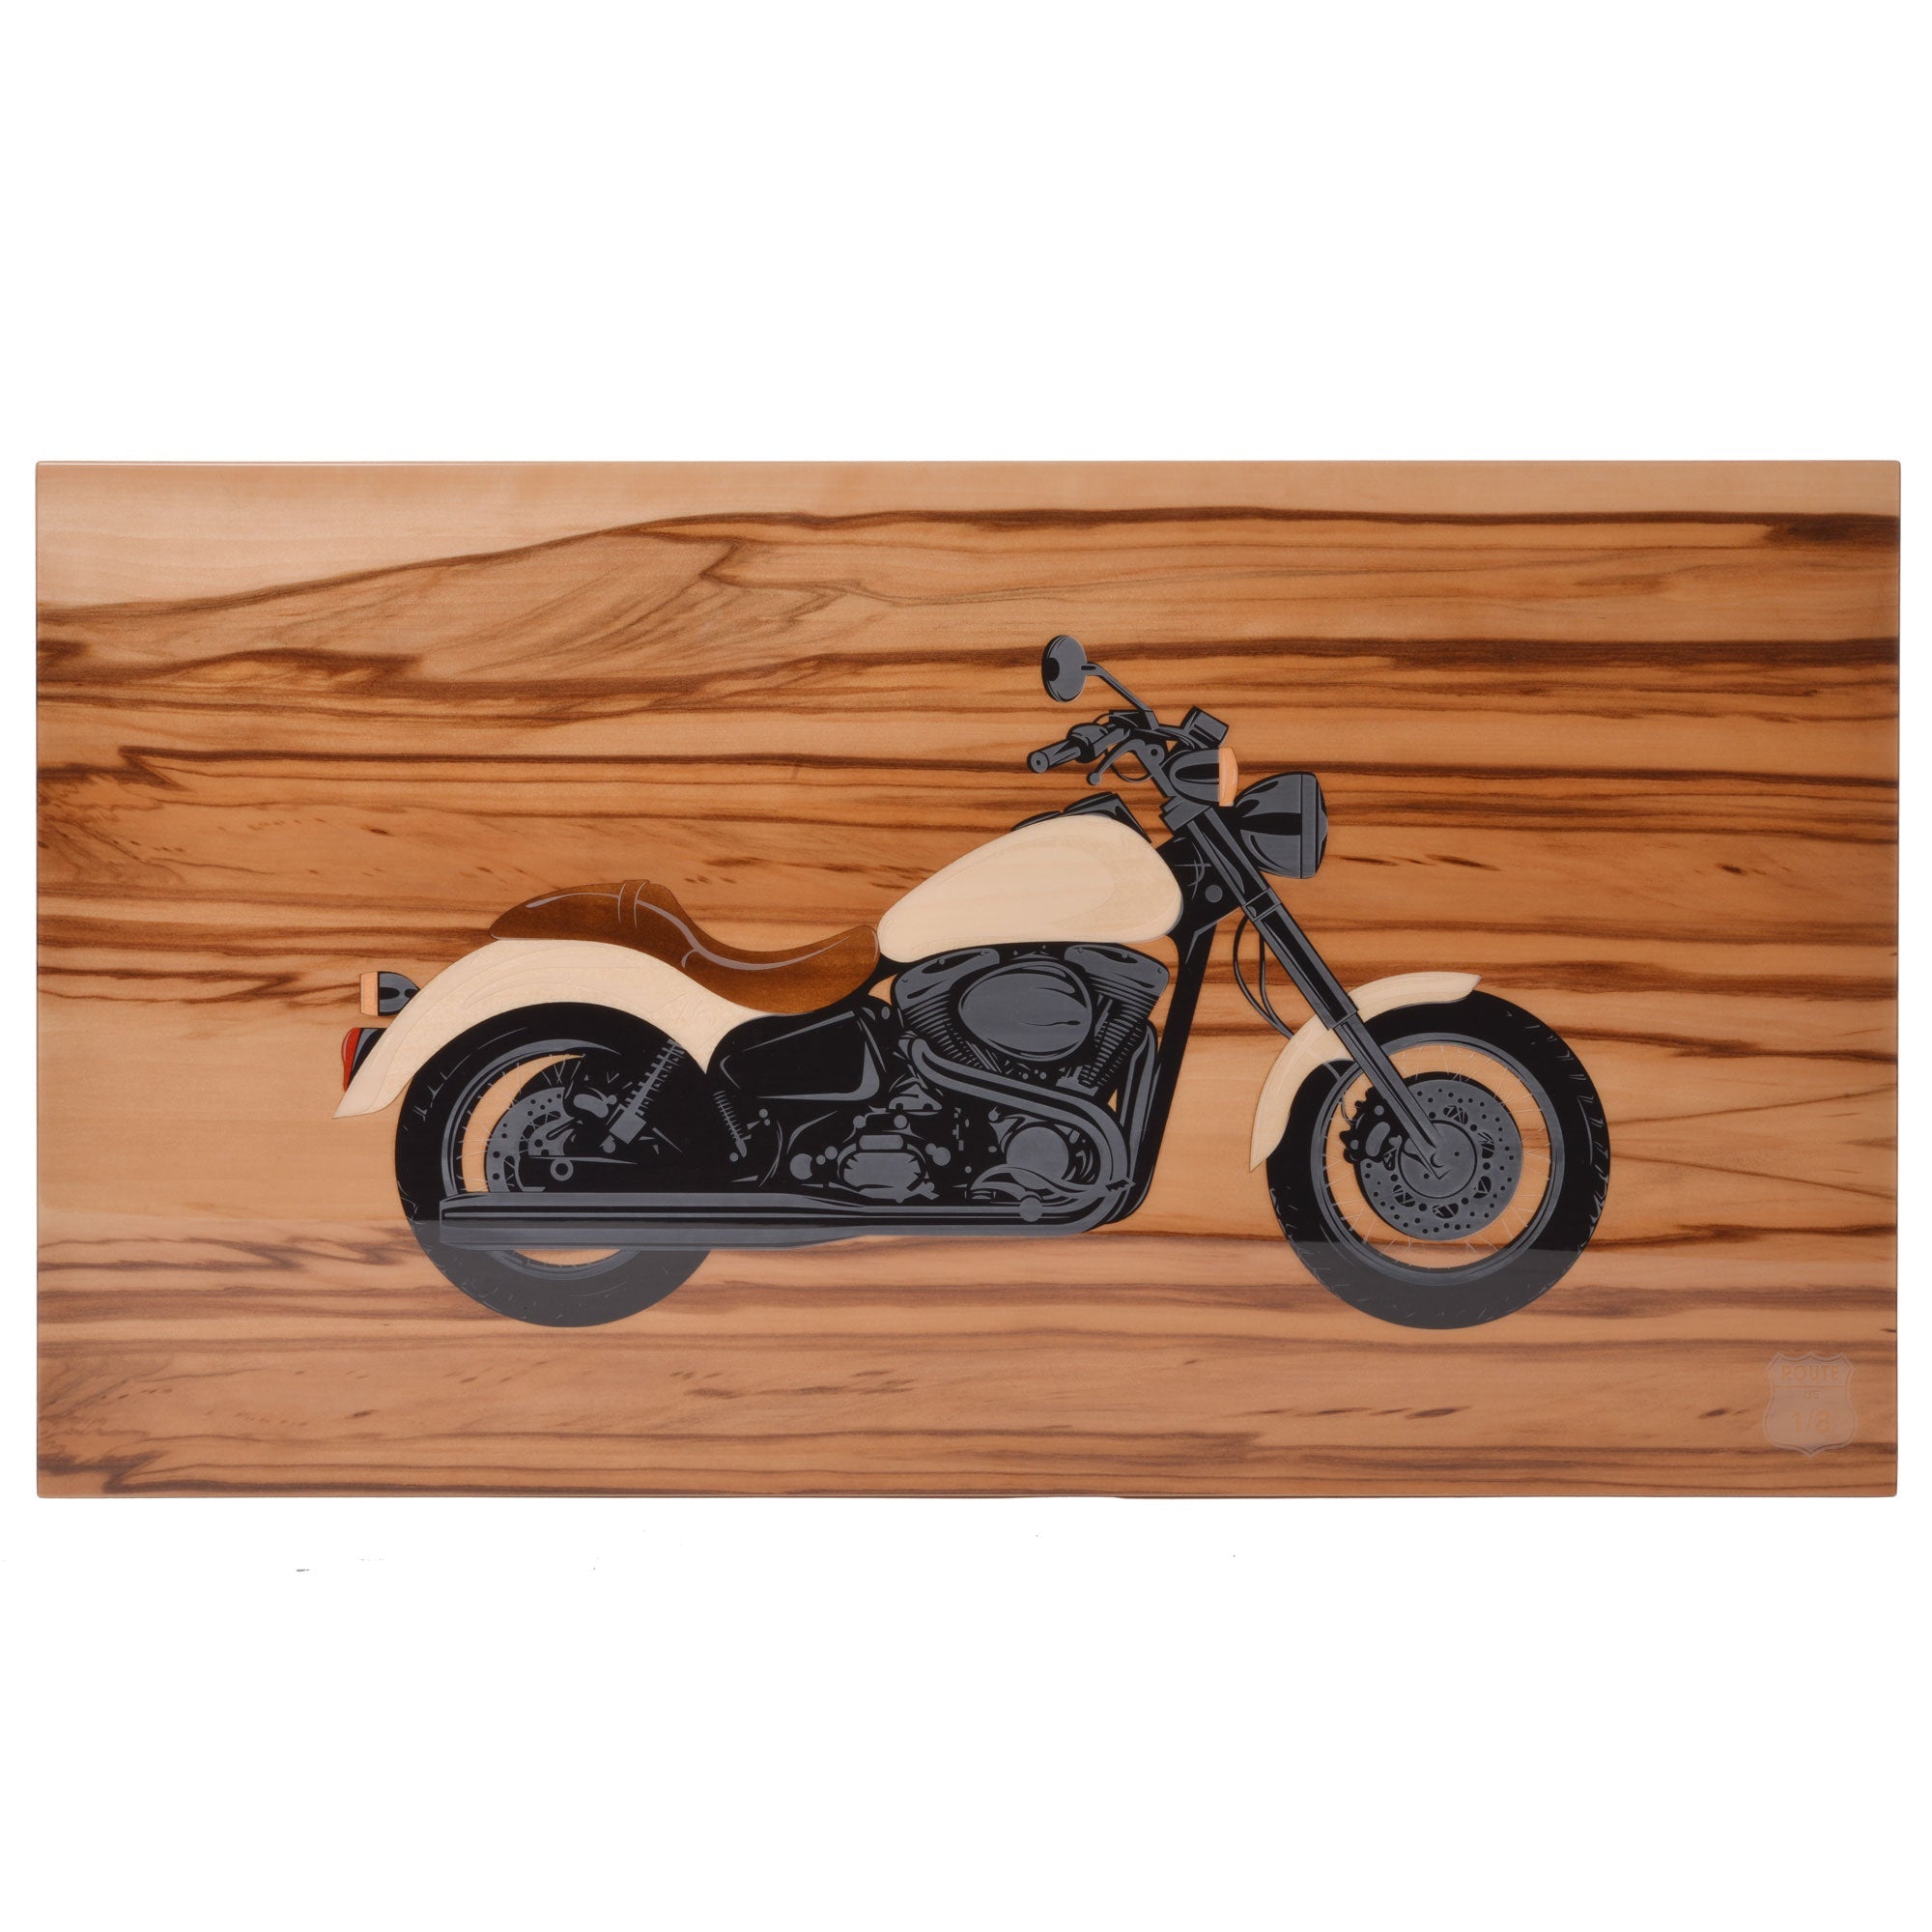 "Motorcycle - Natural - engraved - 110 Cigars